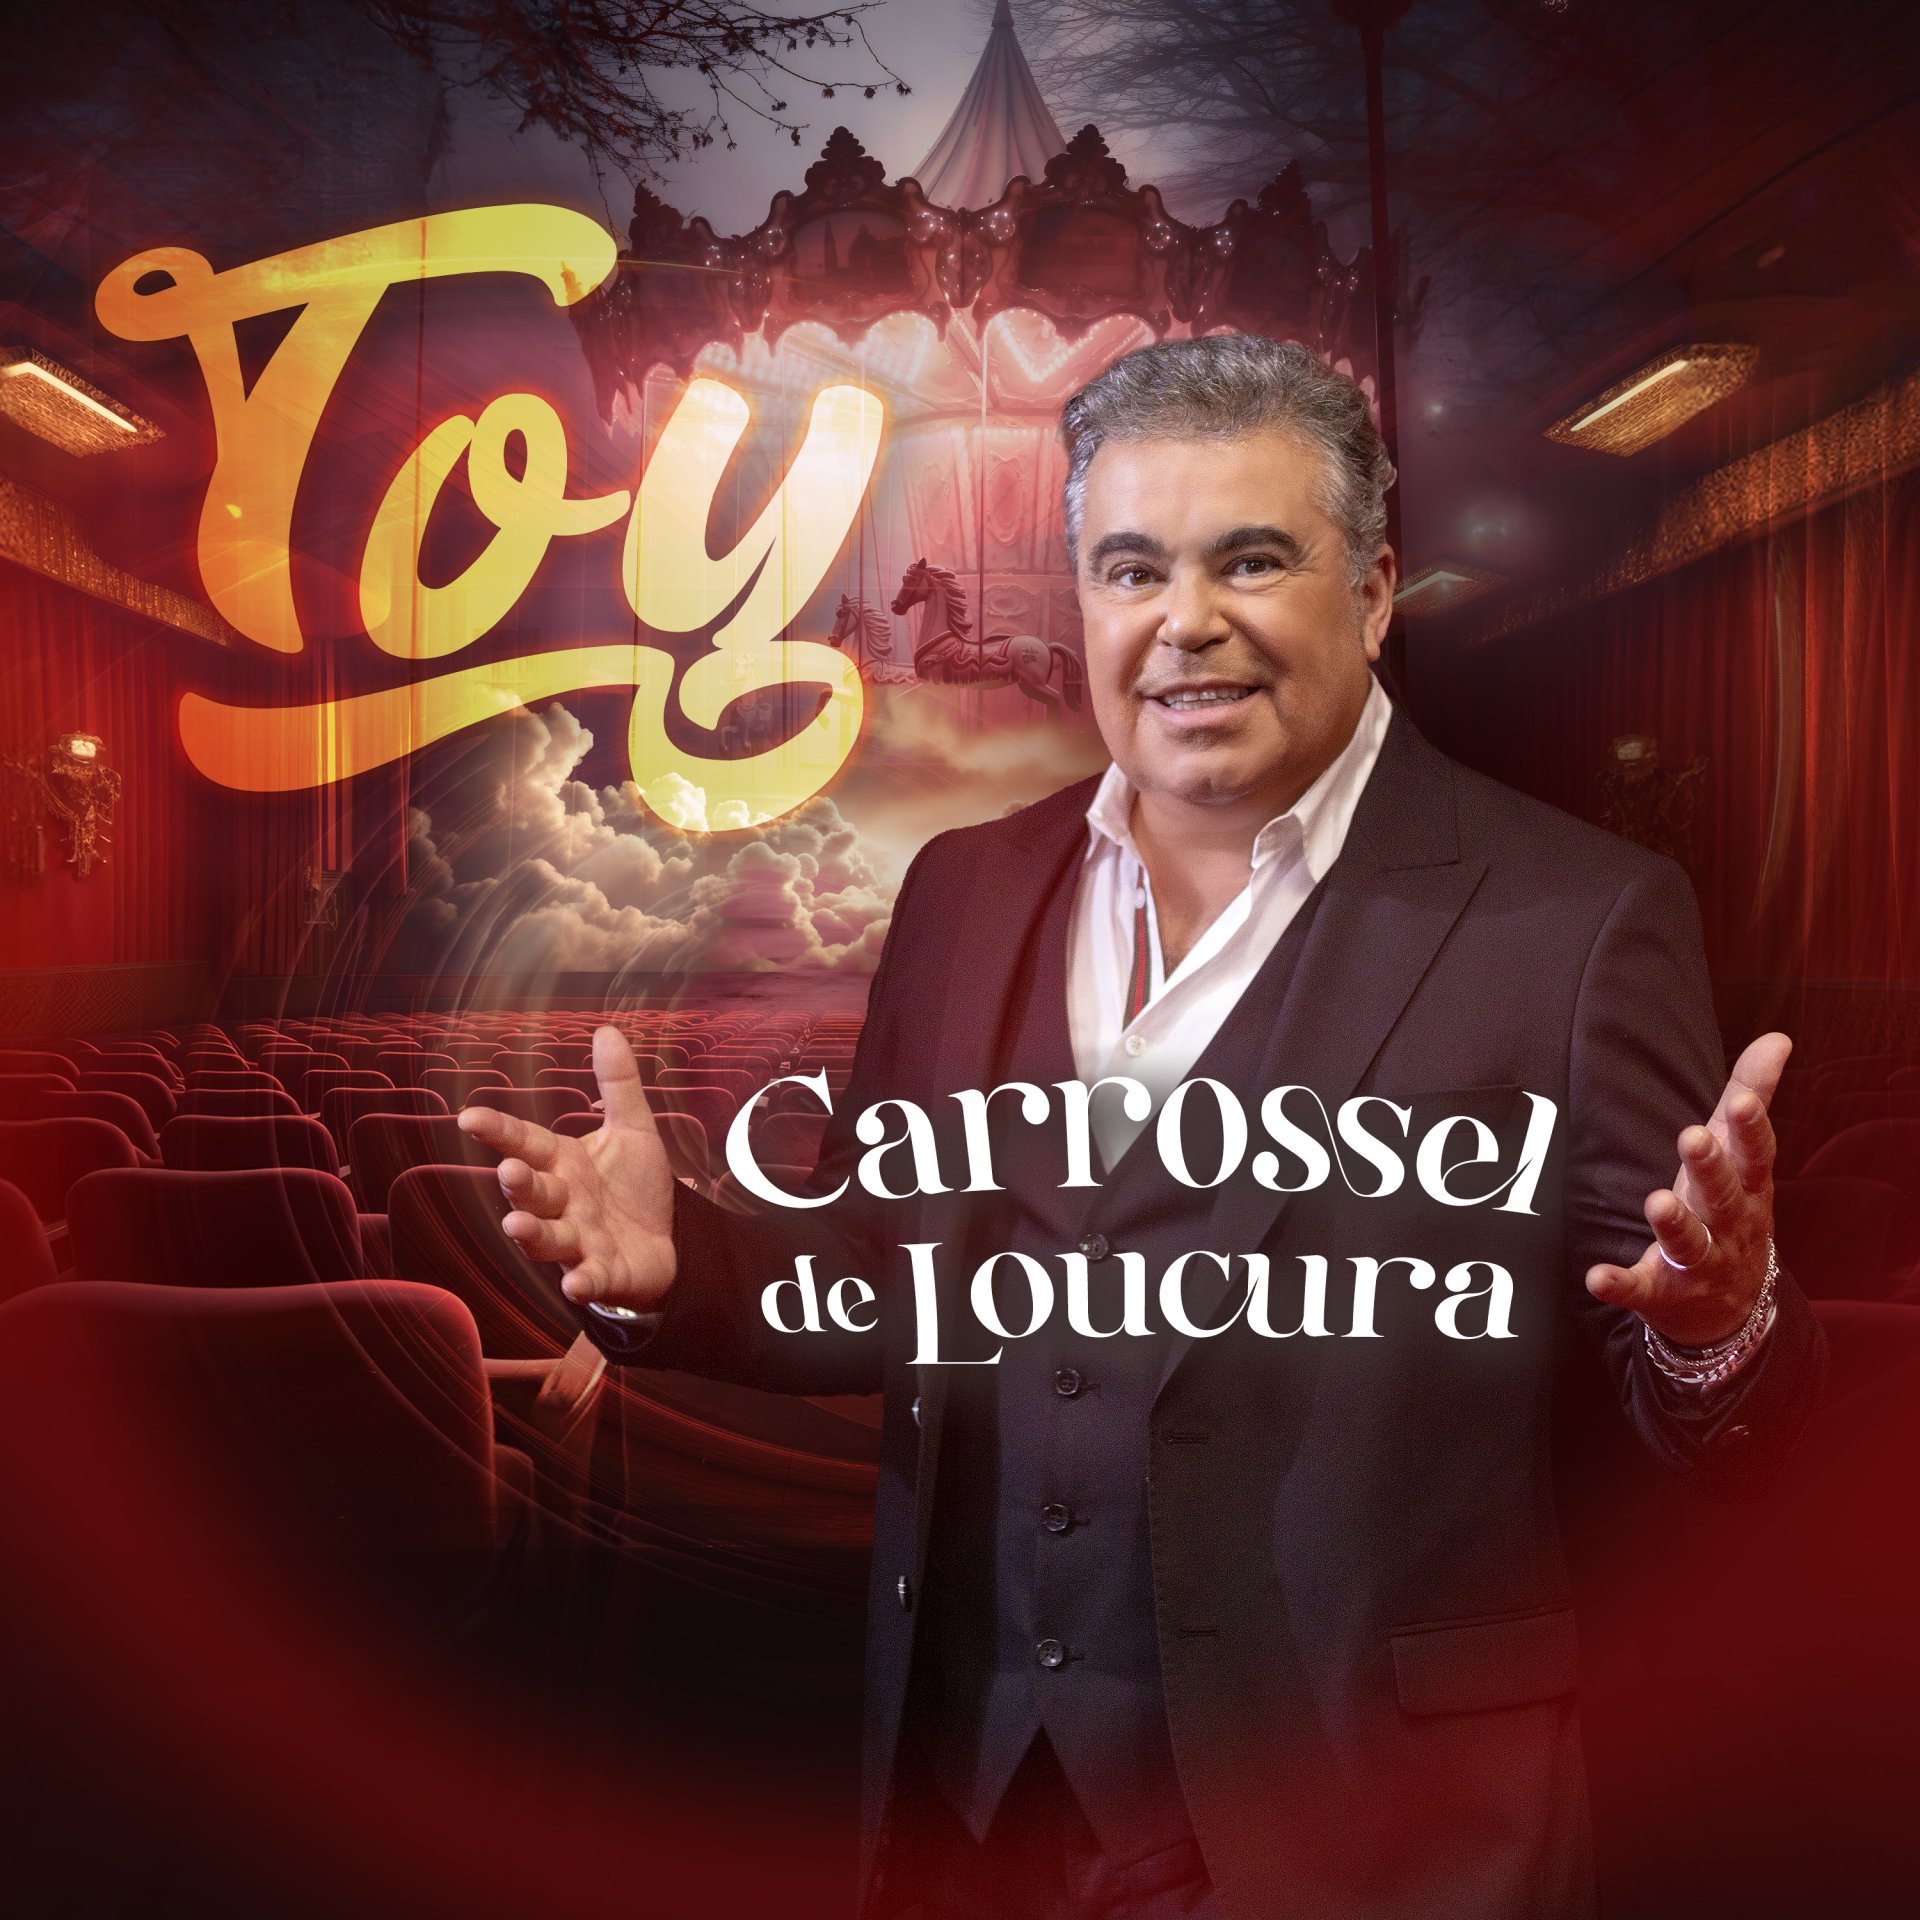 Toy regressa com novo EP “Carrossel de Loucura”